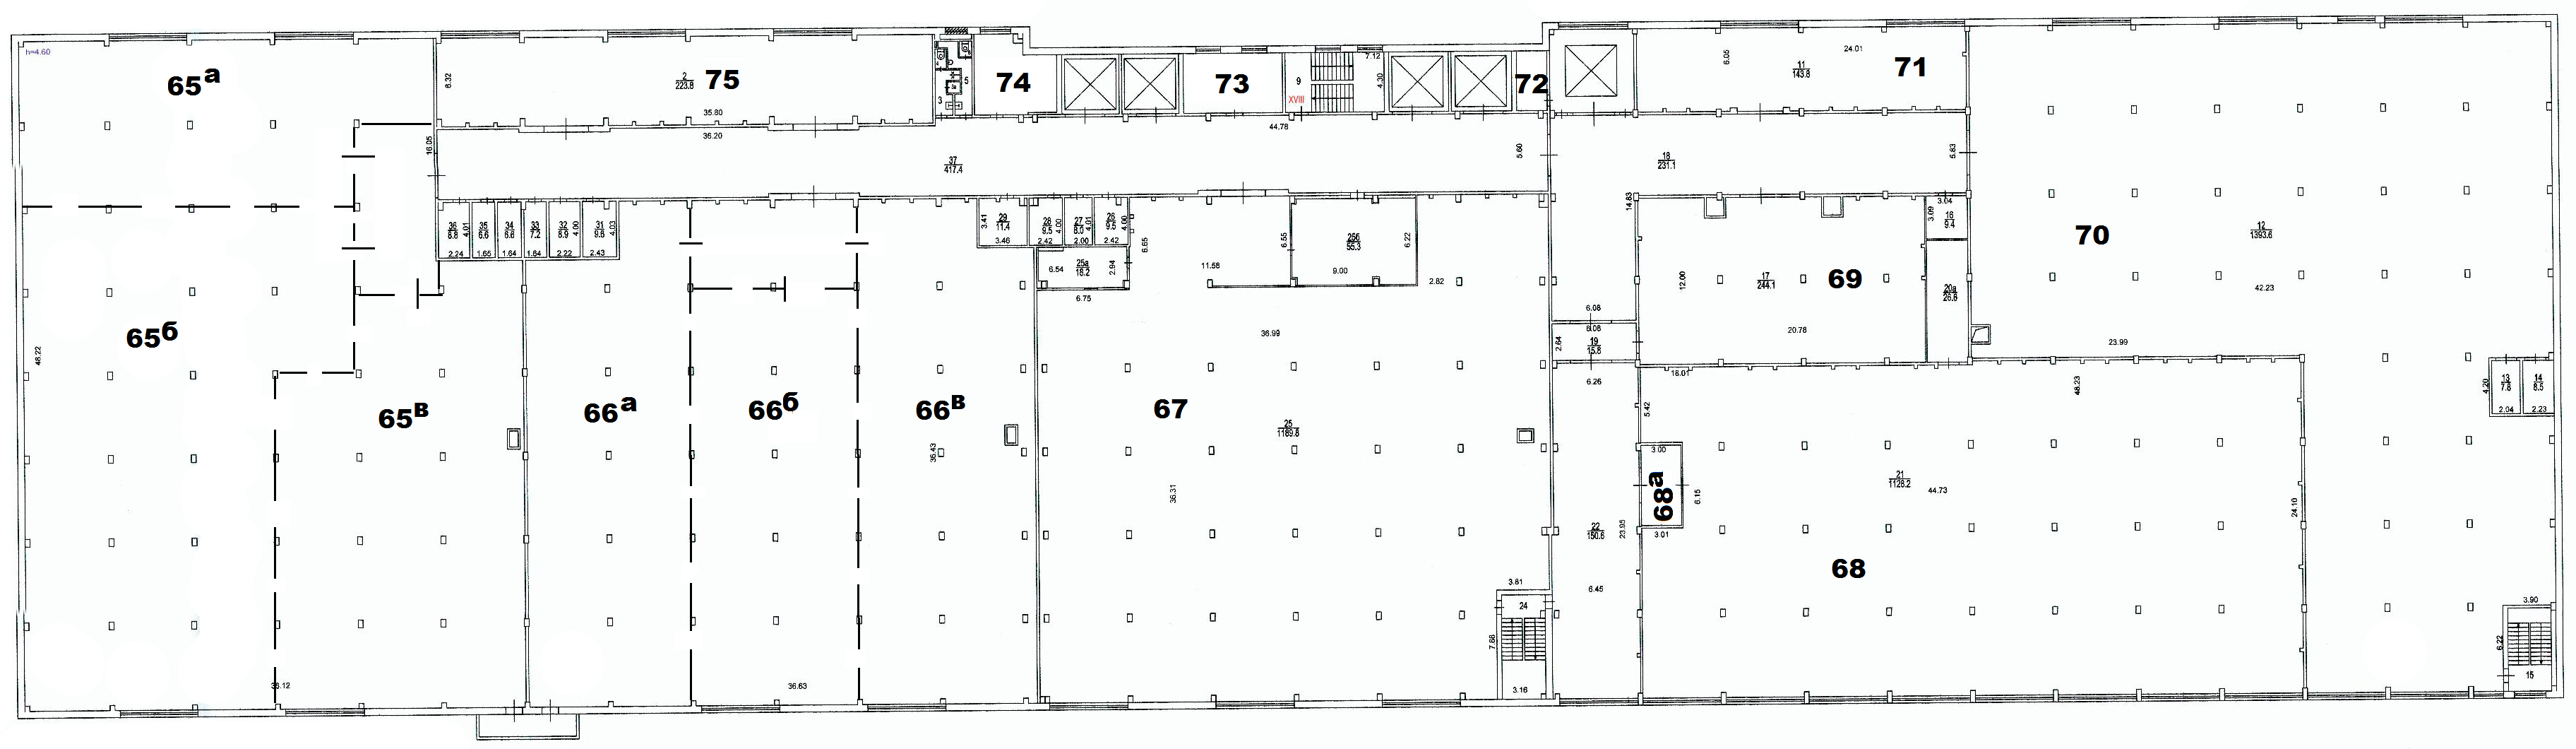 Поэтажный план – складской комплекс на улице Рябиновая, дом 65, строение 2